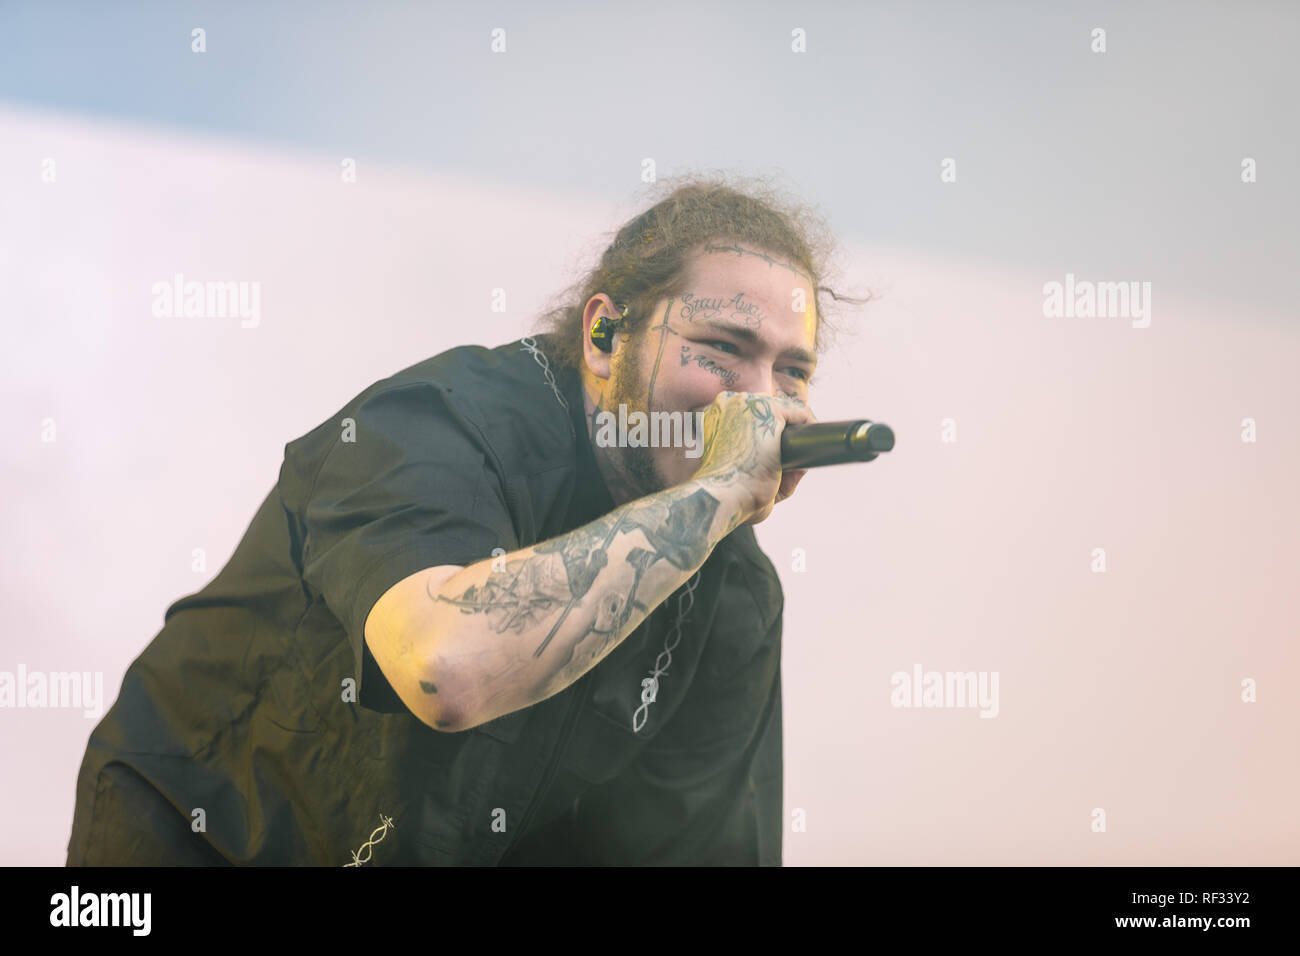 Larvik, Norwegen. 14. Juli 2018. Amerikanische rapper Post Malone live auf der Bühne des Stavern Festival in Norwegen 2018. Tore Sætre/Alamy leben Nachrichten Stockfoto